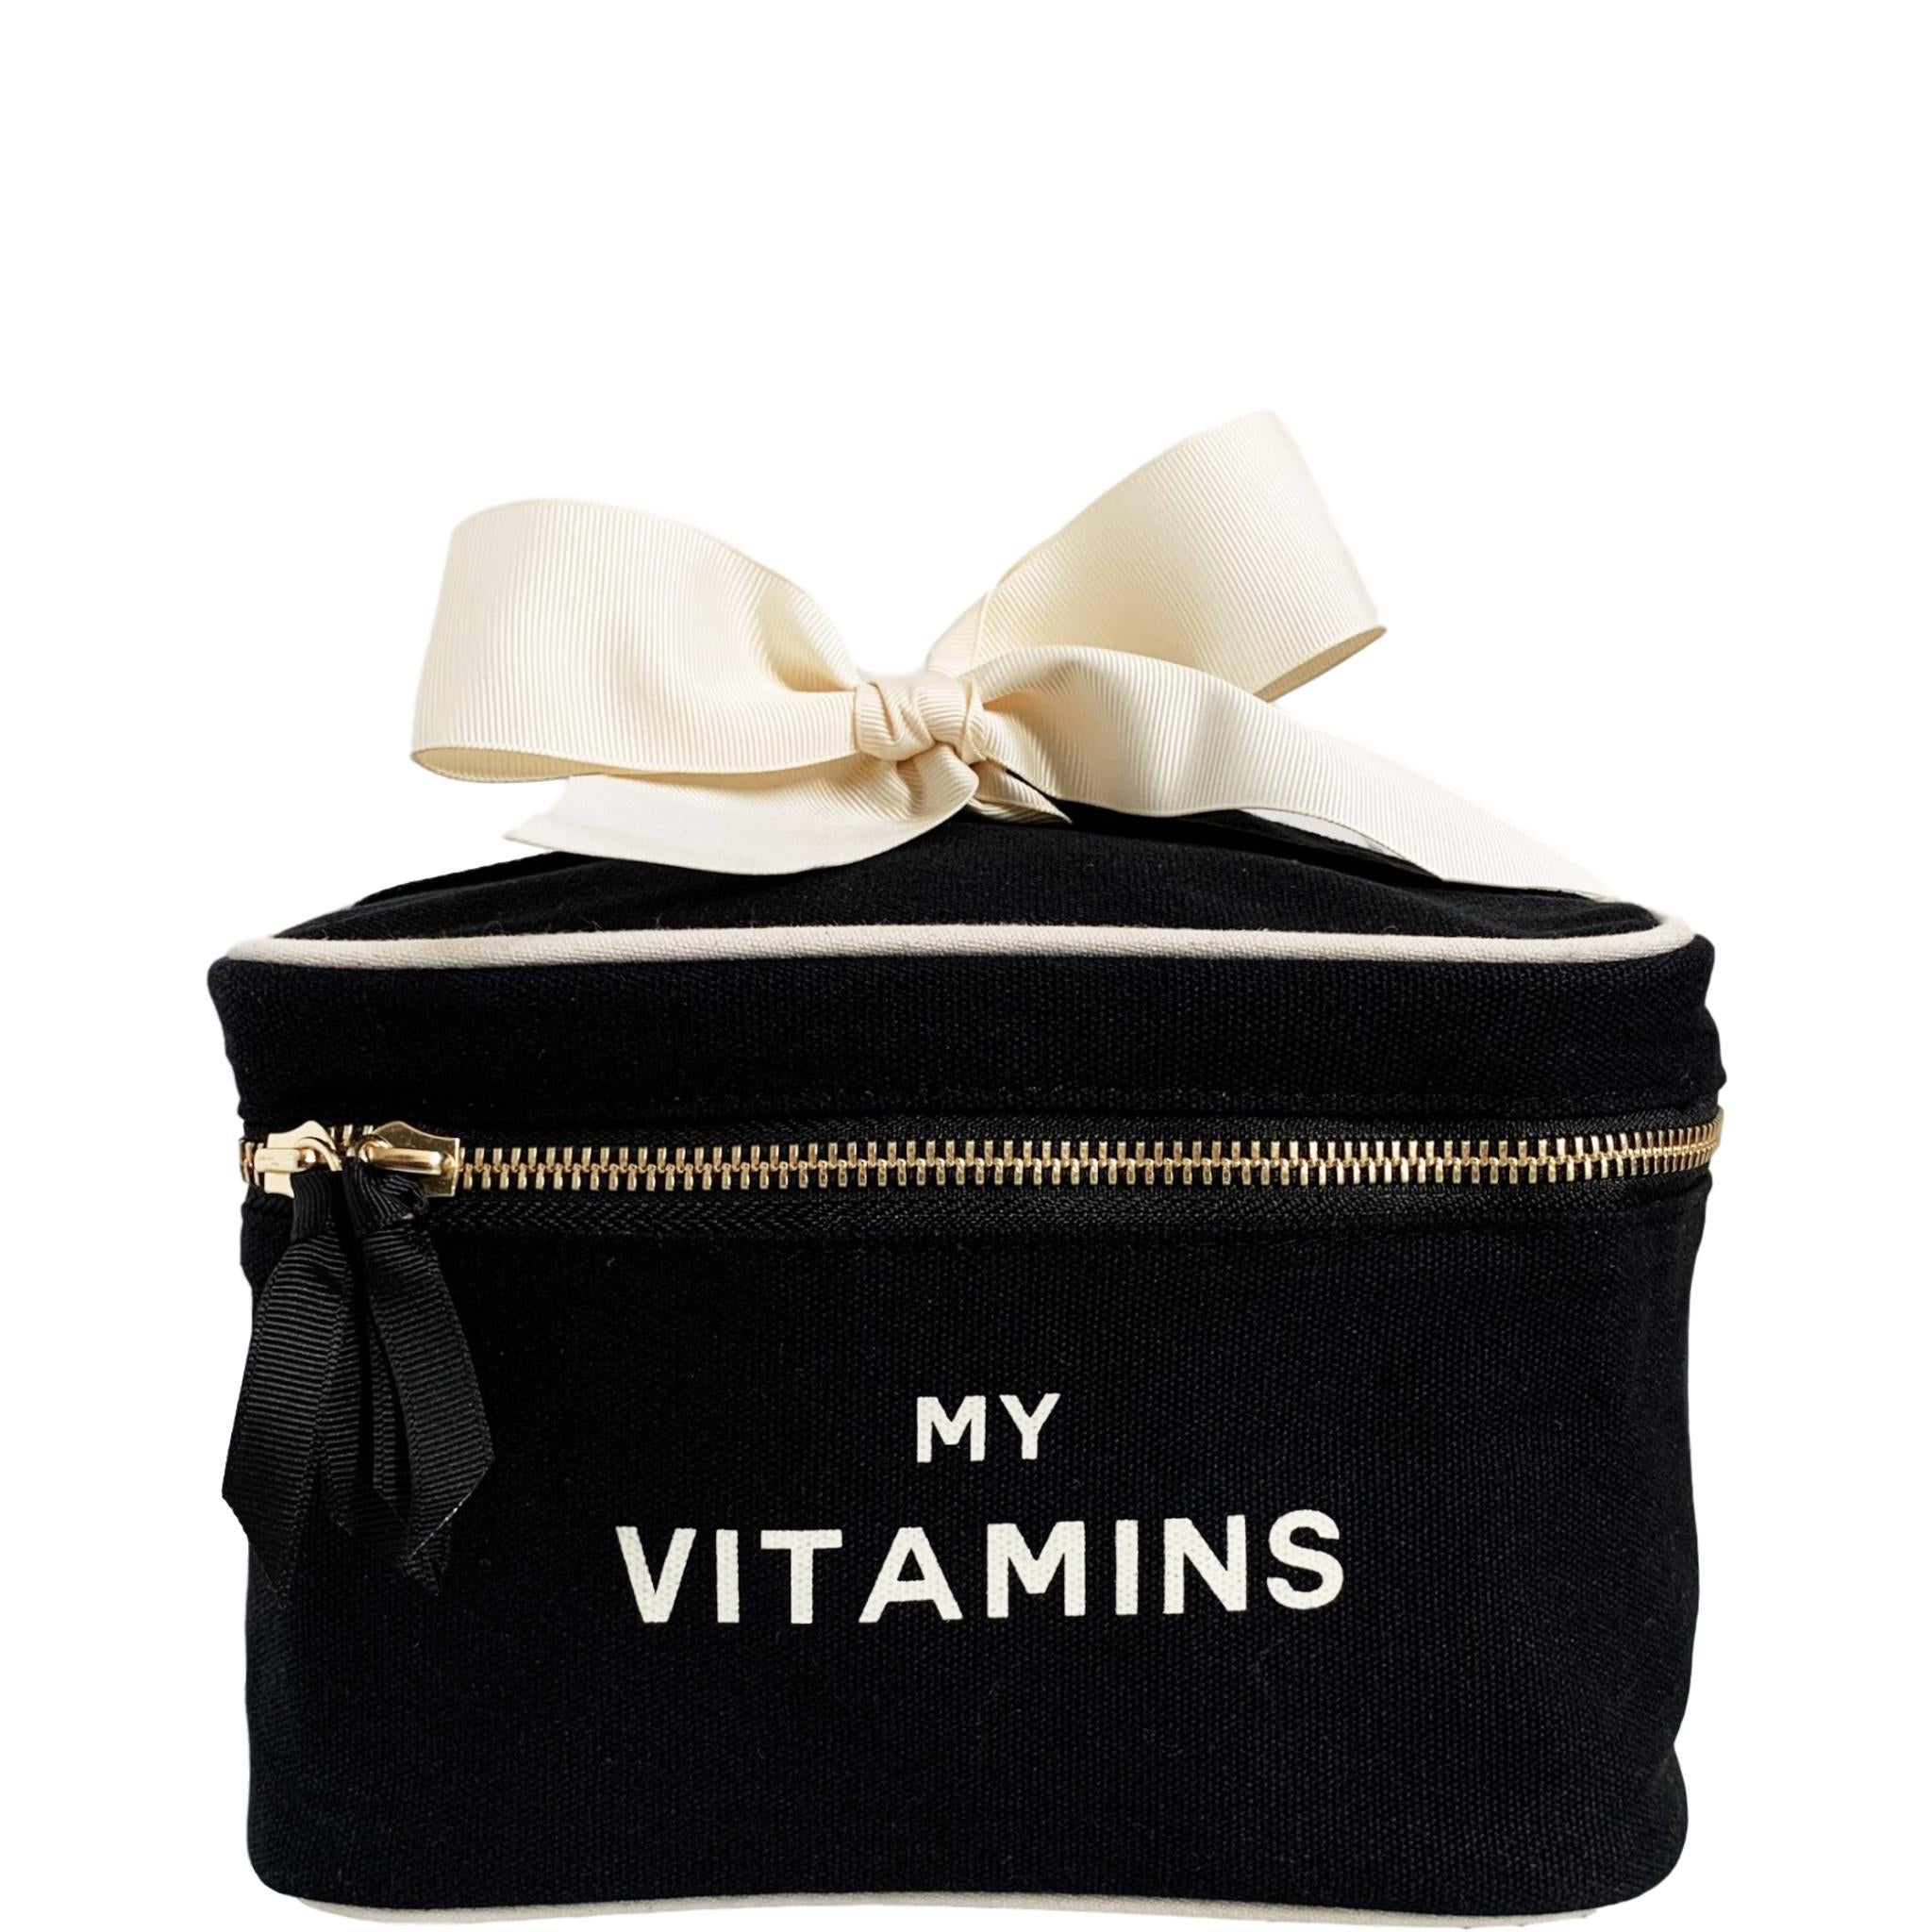 Boîte noire avec "my vitamins" imprimé sur le devant en blanc.